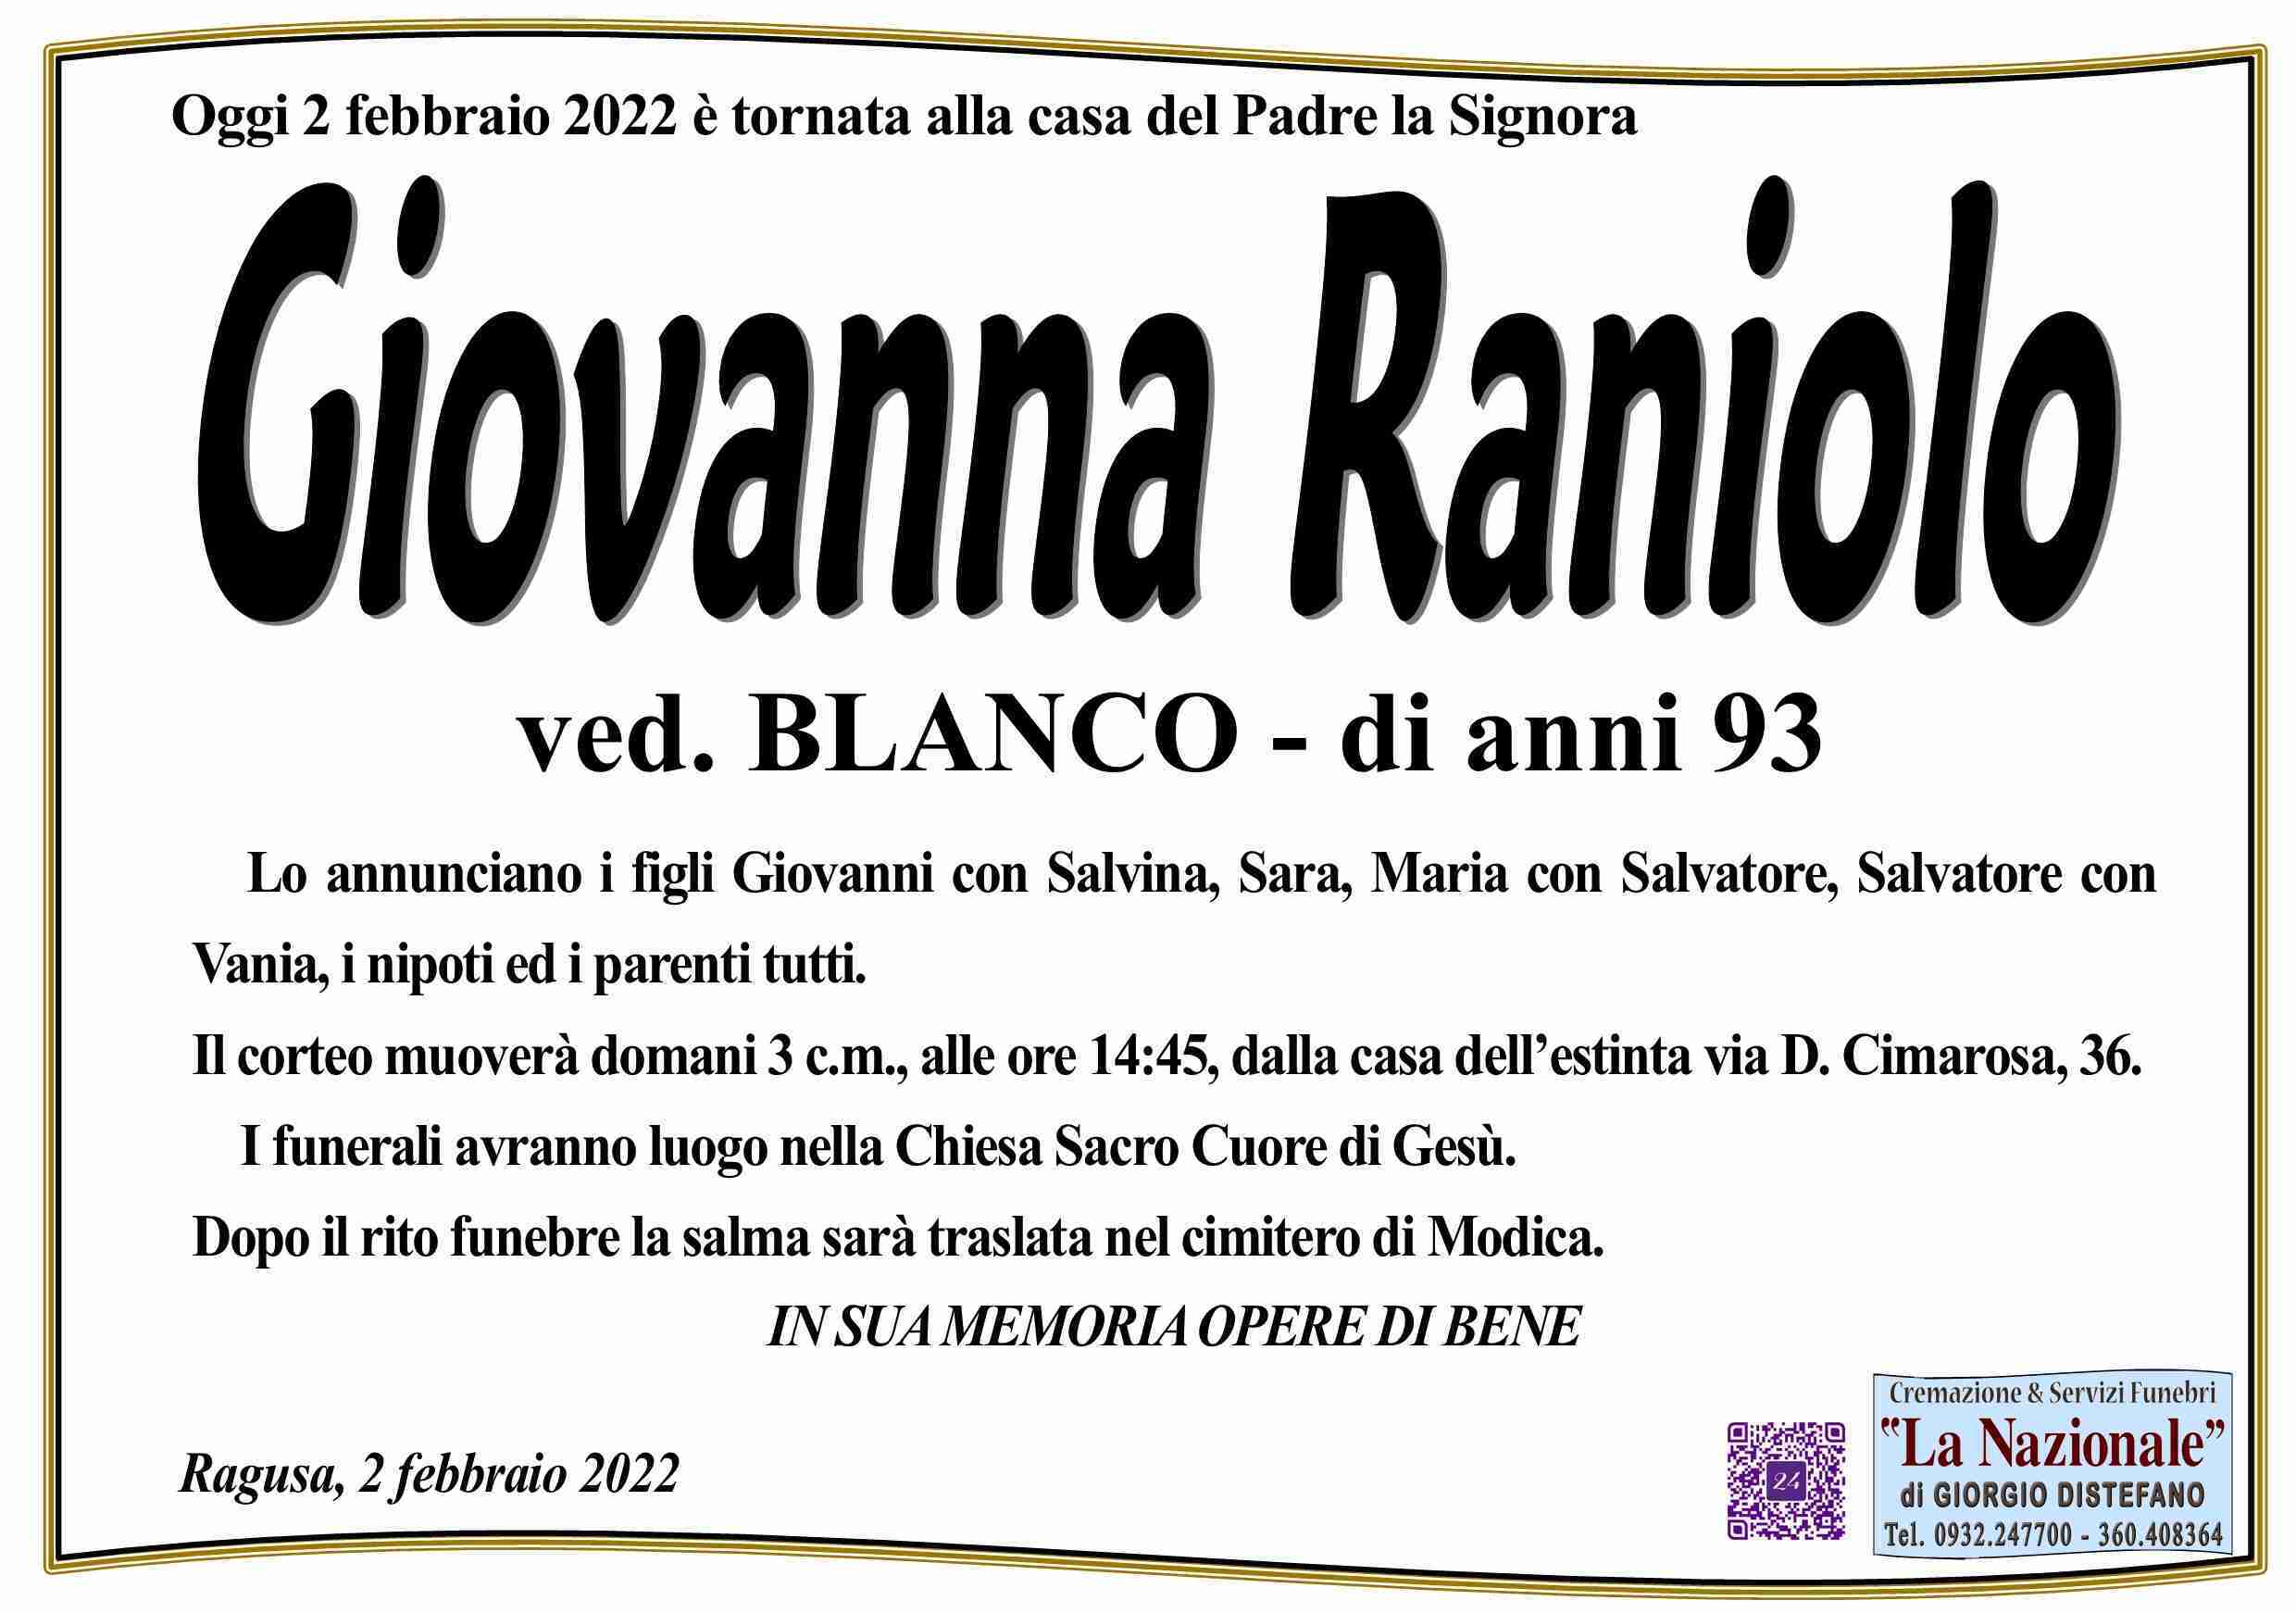 Giovanna Raniolo